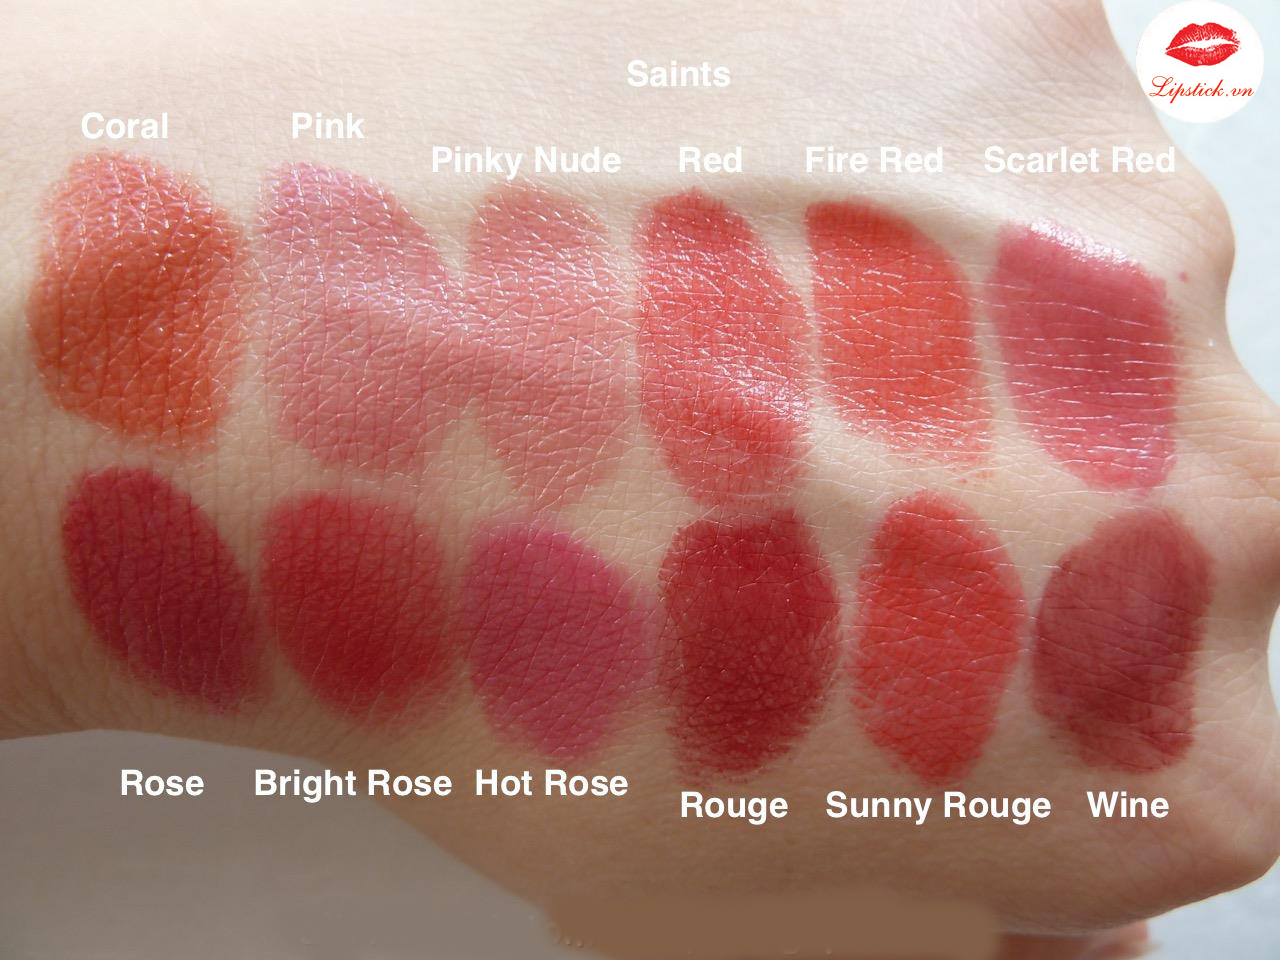 Swatch Lipstick Queen Màu Hot Rose.